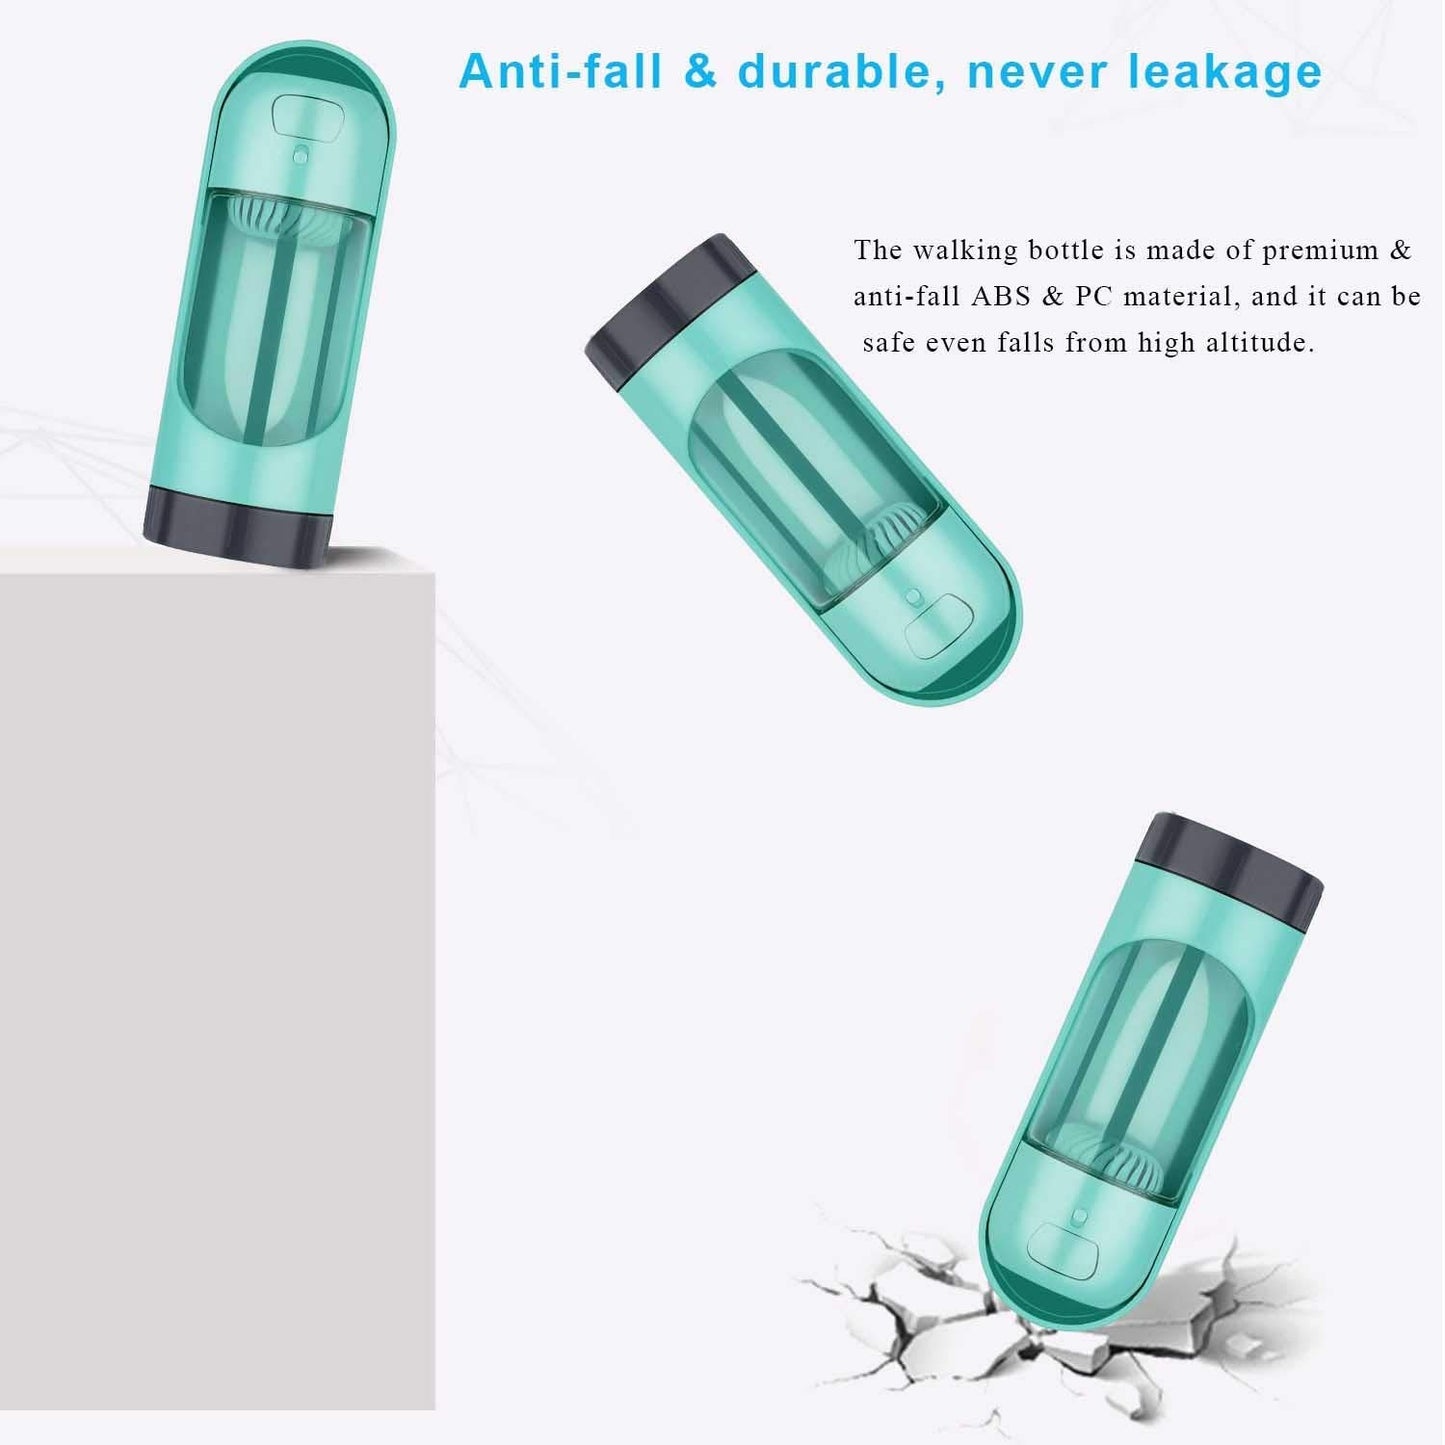 Portable Pet Water Bottle Dispenser DromedarShop.com Online Boutique